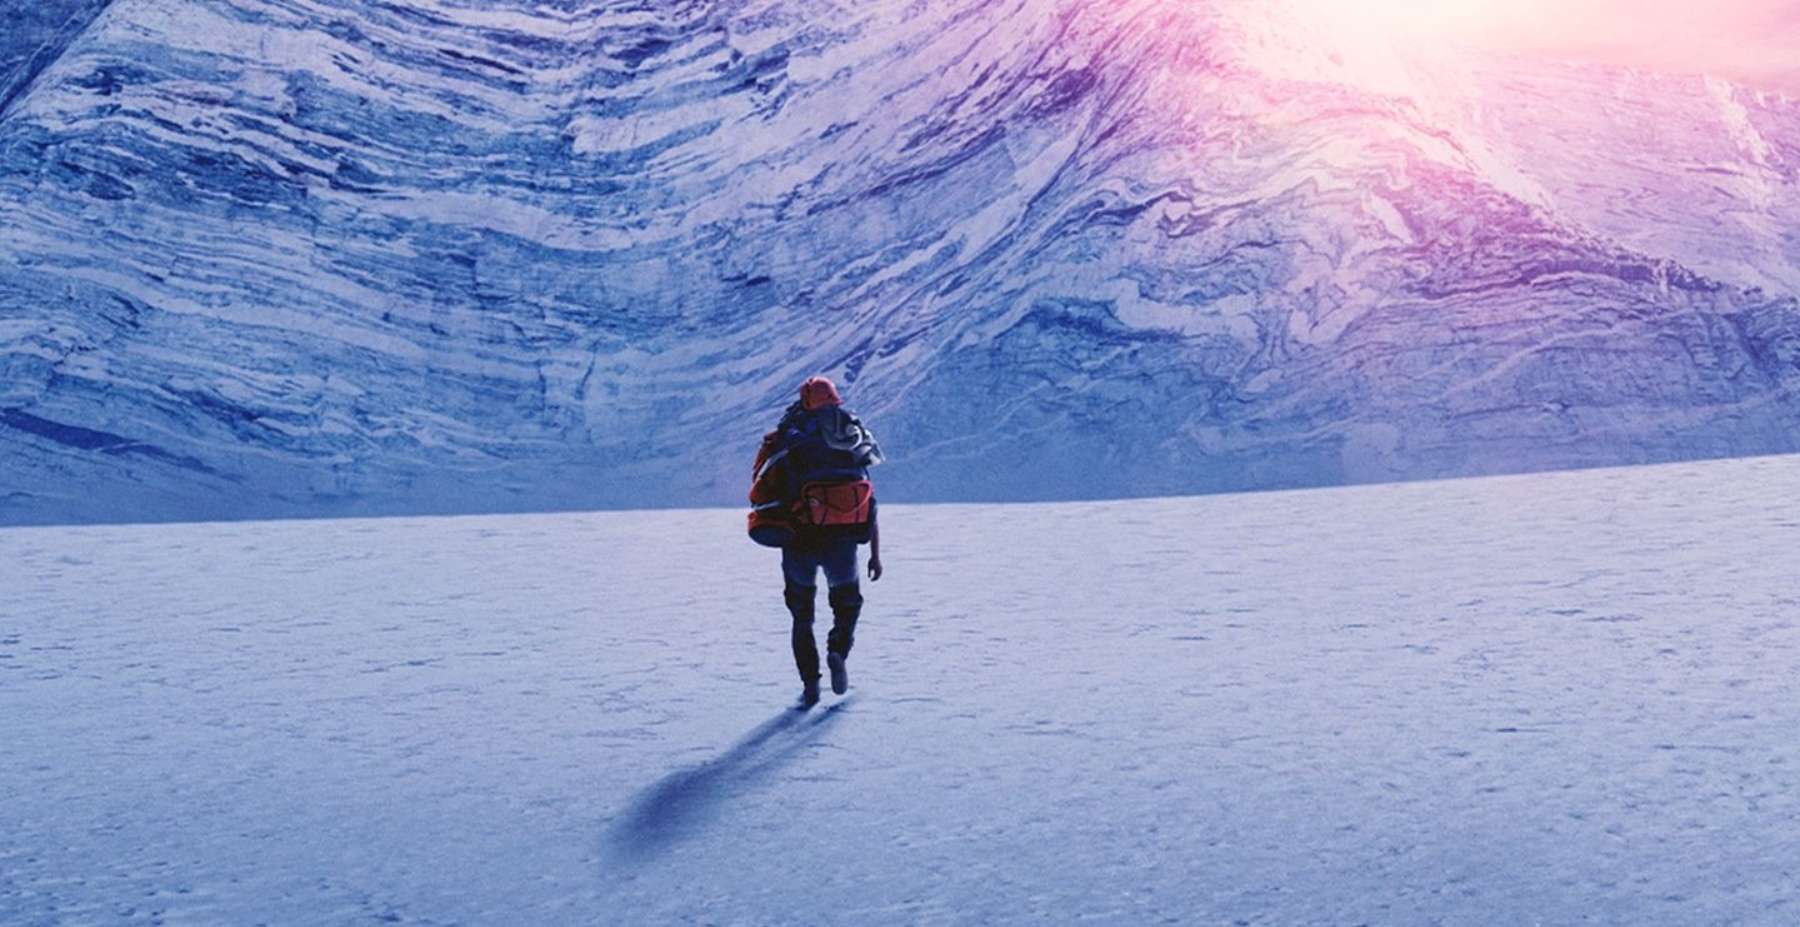 « C’était une expérience inoubliable » : Heïdi Sevestre raconte son expédition au Groenland où « tout est démesuré » !